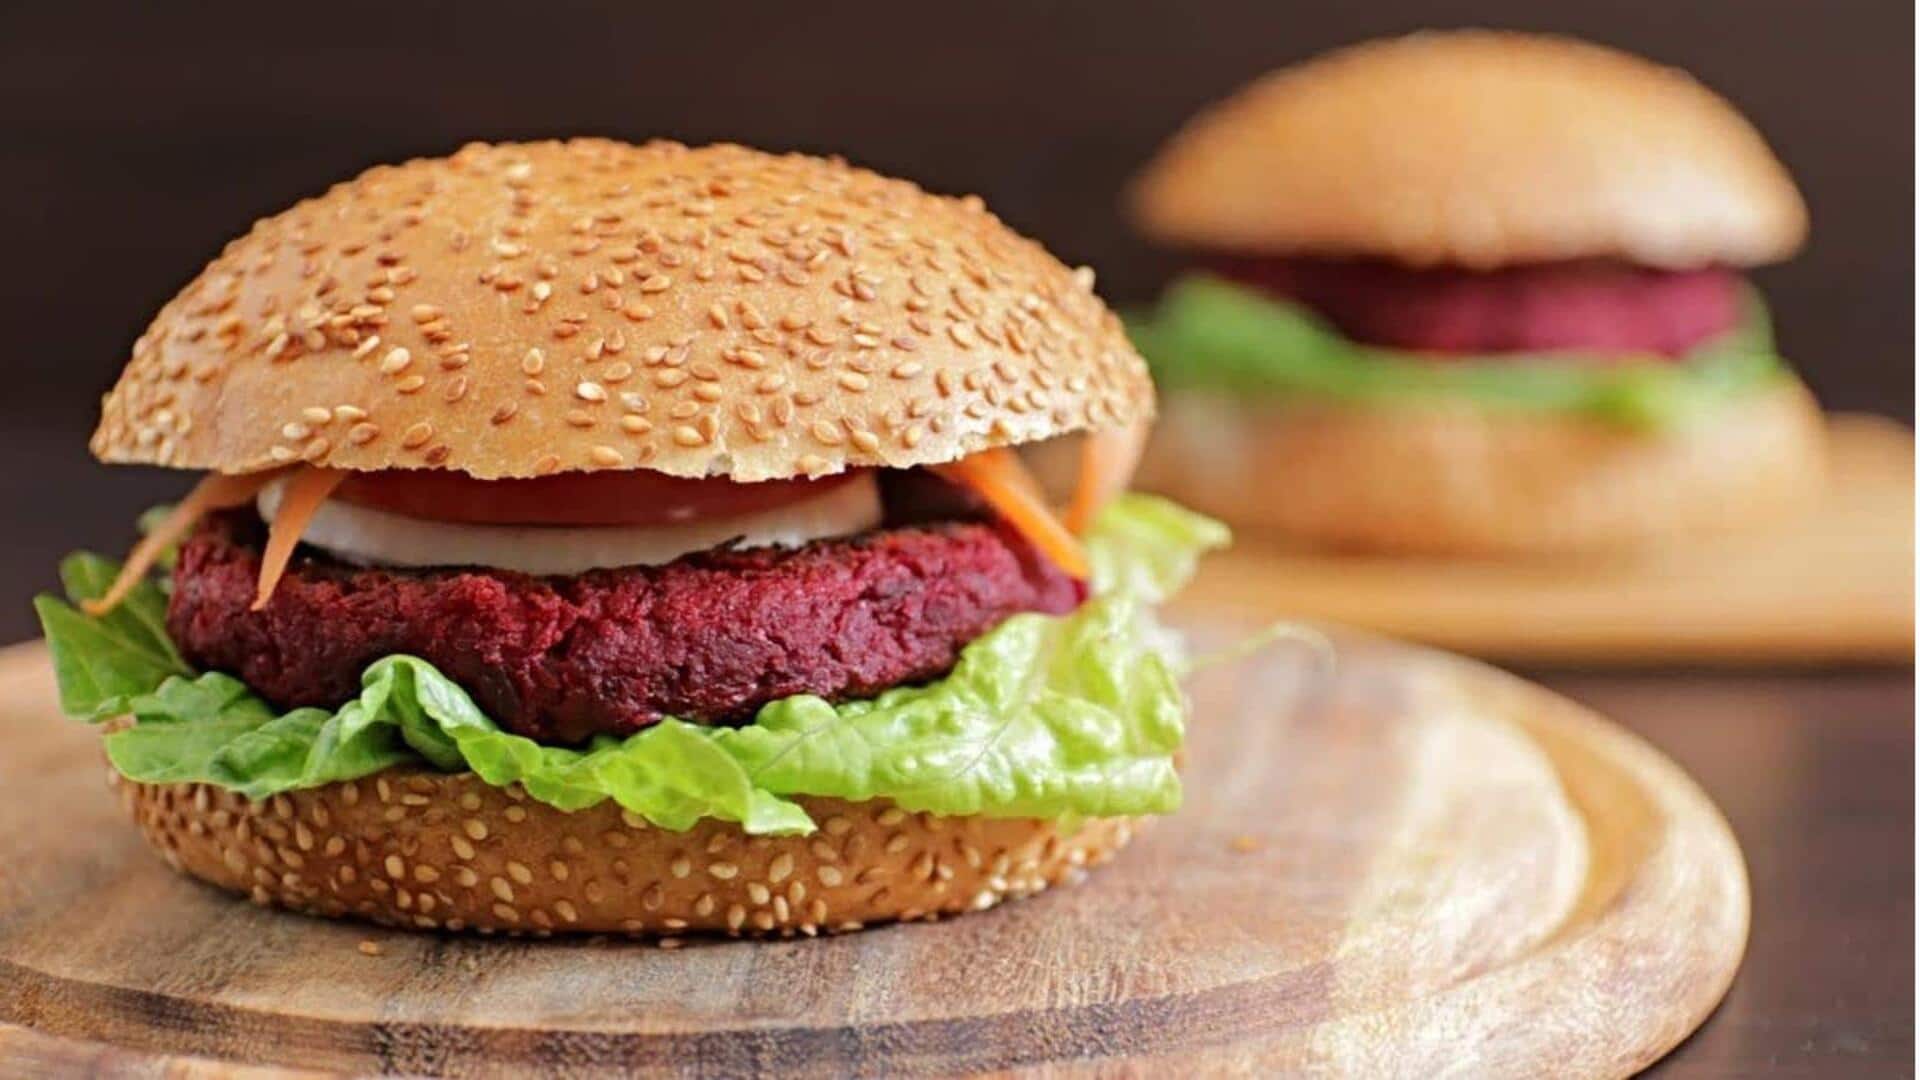 Masak burger bit vegan ini dalam 4 langkah sederhana